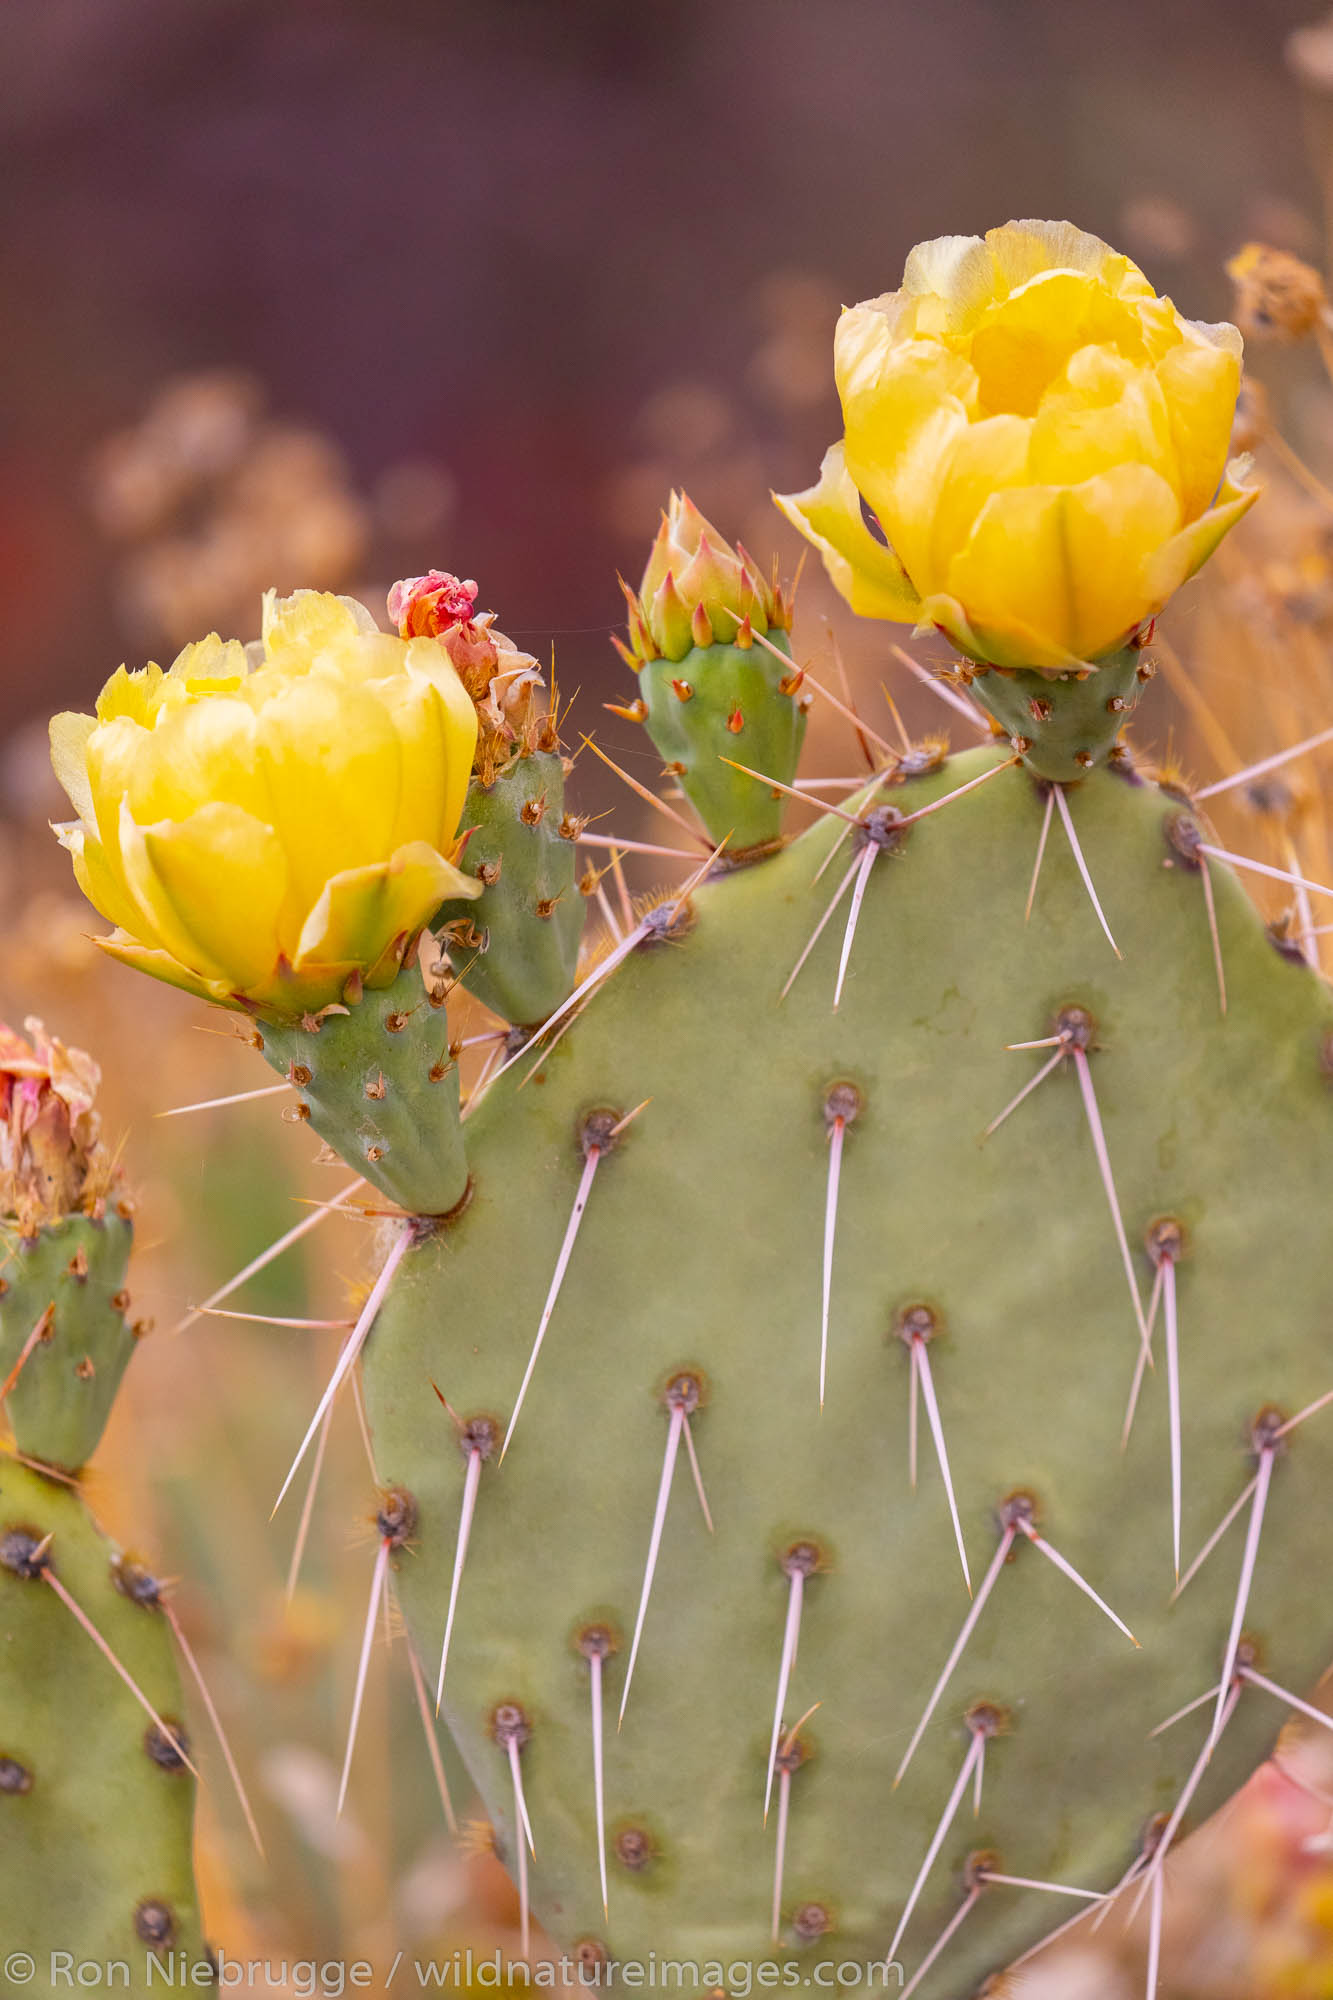 Blooming Prickly Pear cactus, Arizona.